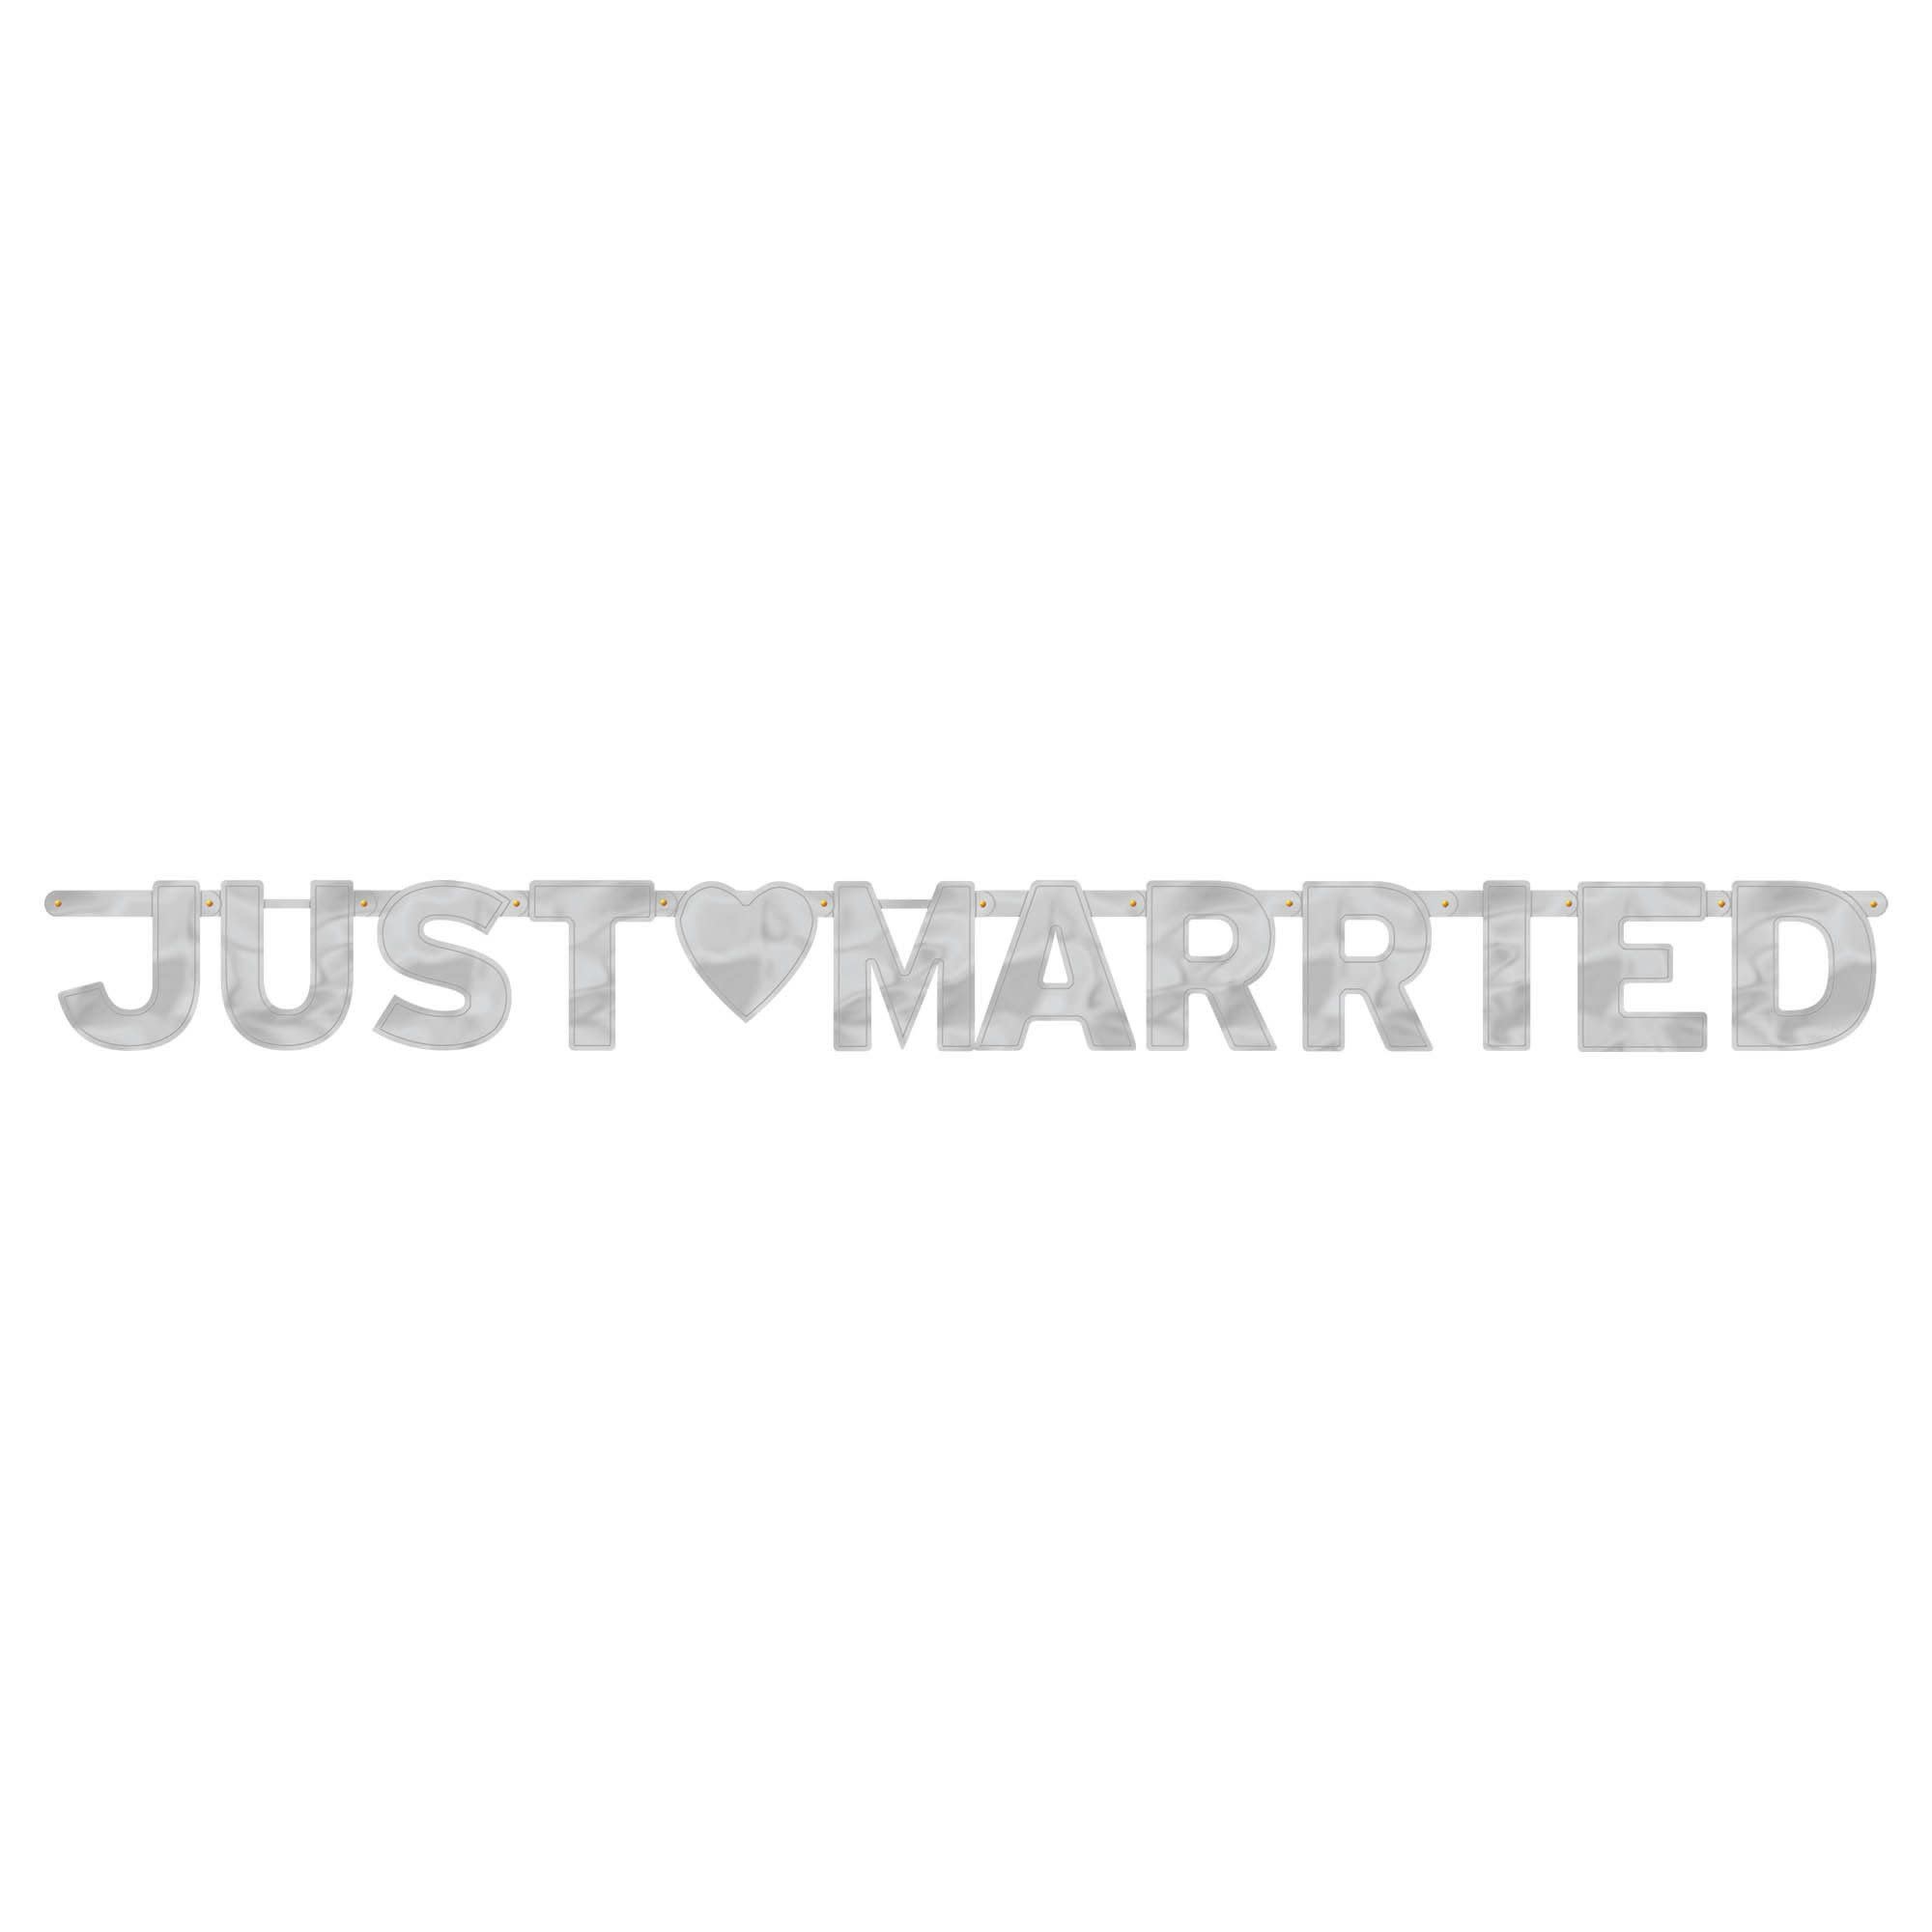 Just Married - Large Foil Letter Banner